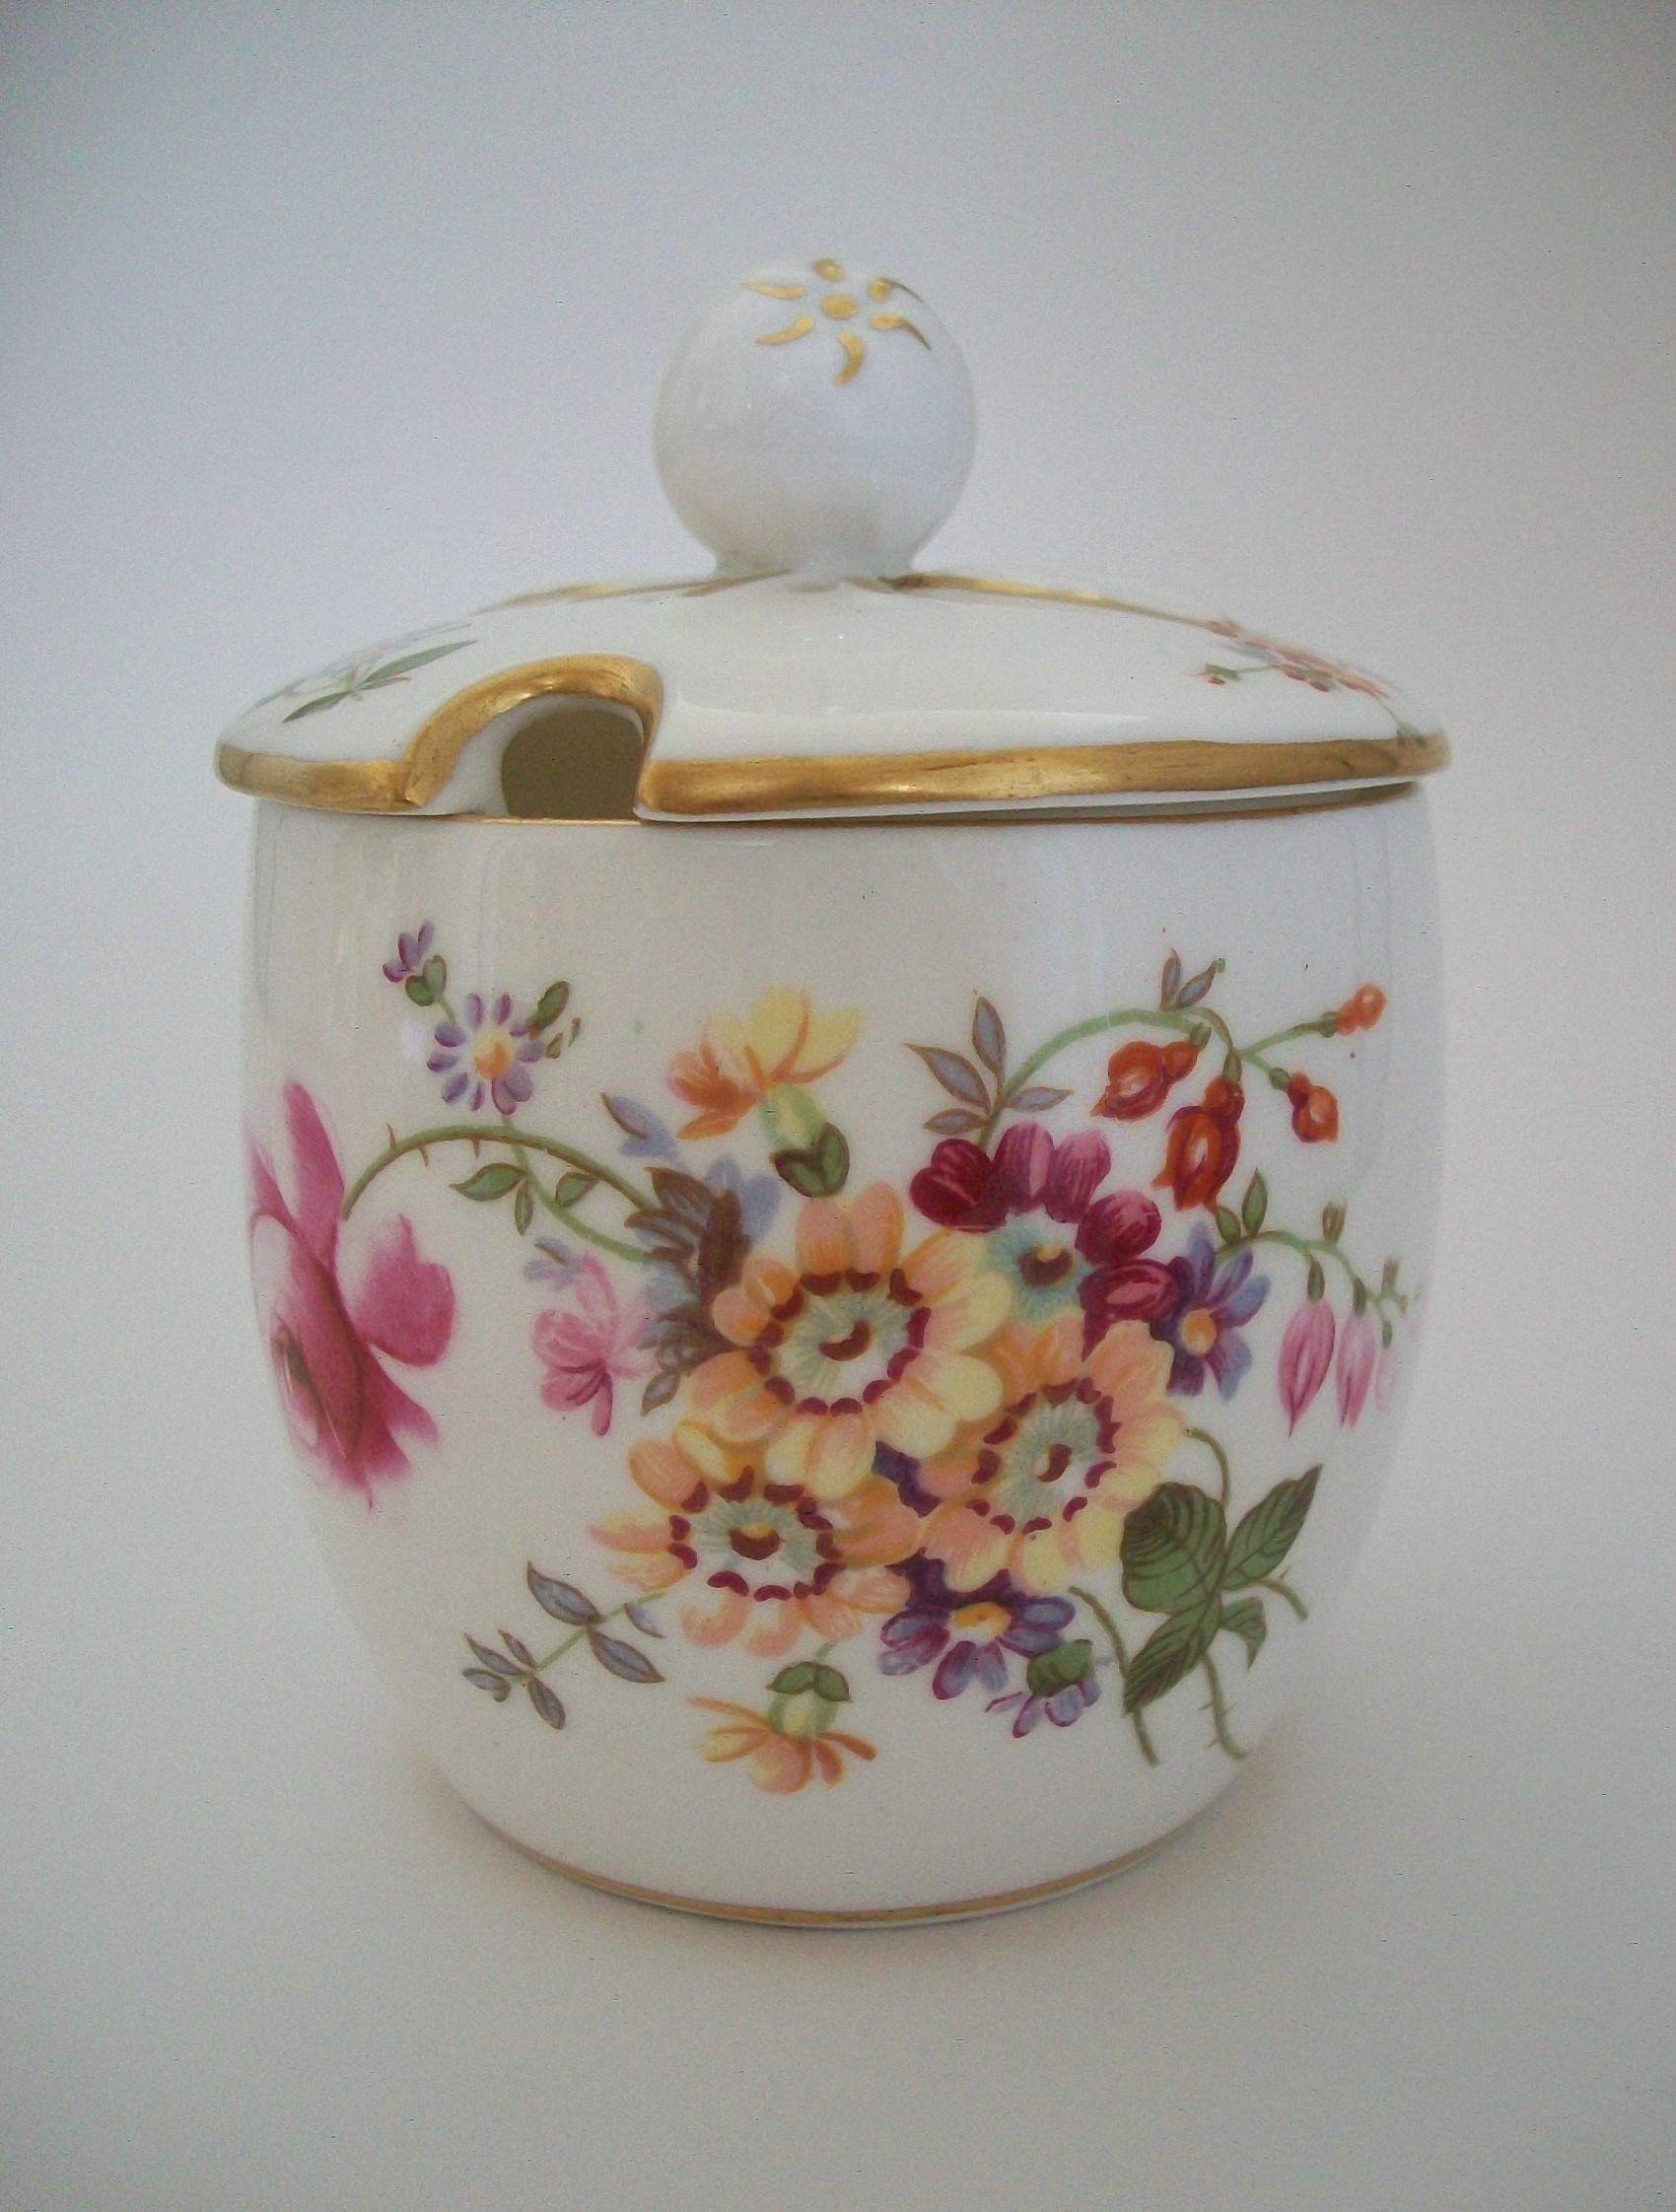 ROYAL CROWN DERBY (Fabricant) - Derby Posies (Pattern) - Pot à confiture à couvercle en porcelaine d'époque avec une décoration florale transférée - avec une décoration dorée peinte à la main sur le couvercle, le bord et le bord de la base - le